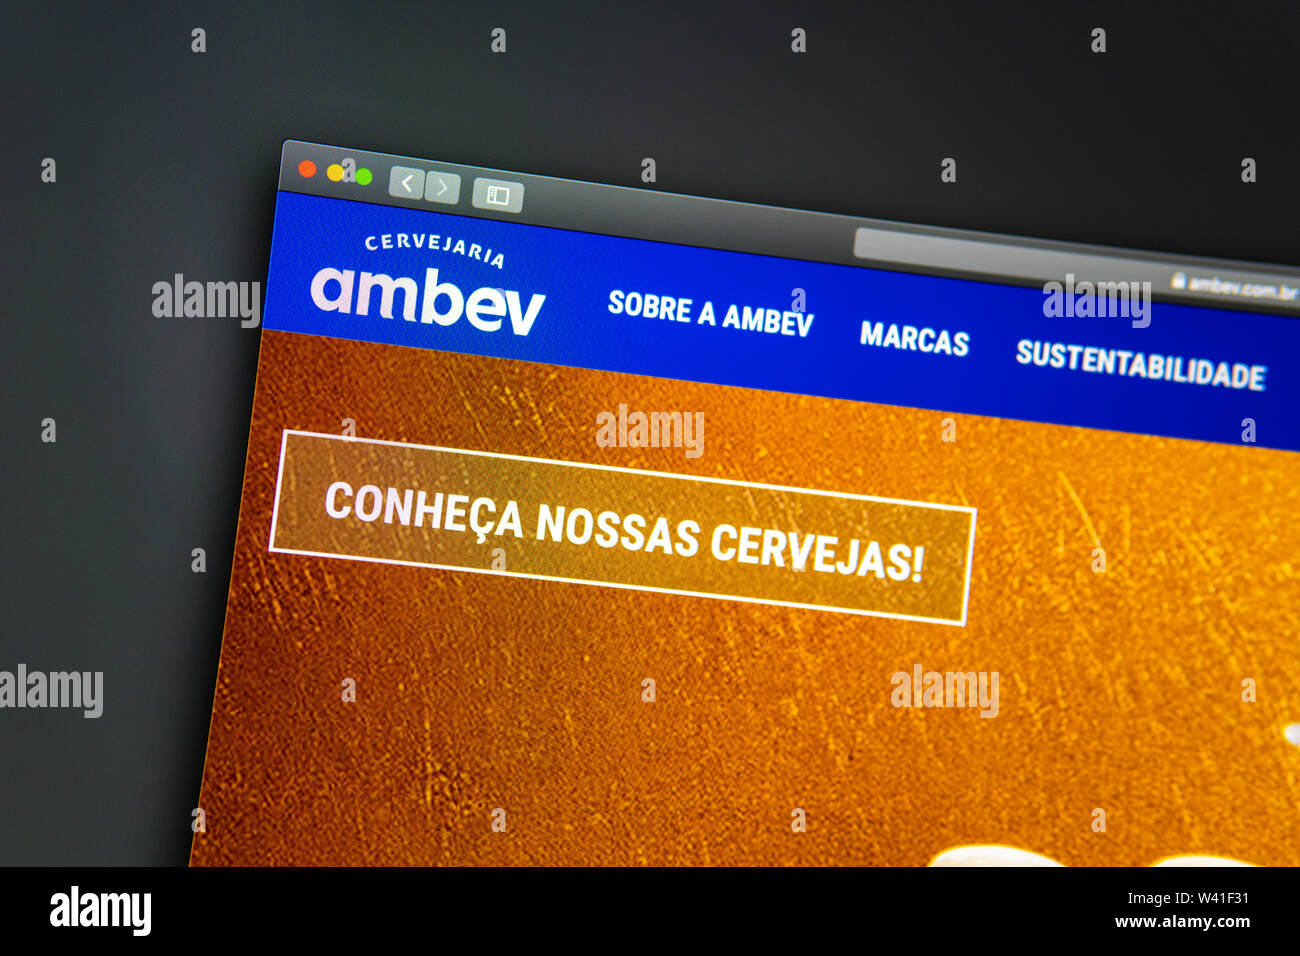 Ambev Startseite. Nahaufnahme von ambev Logo. Kann als illustrative für Medien, Marketing oder Business Konzept verwendet werden. Stockfoto